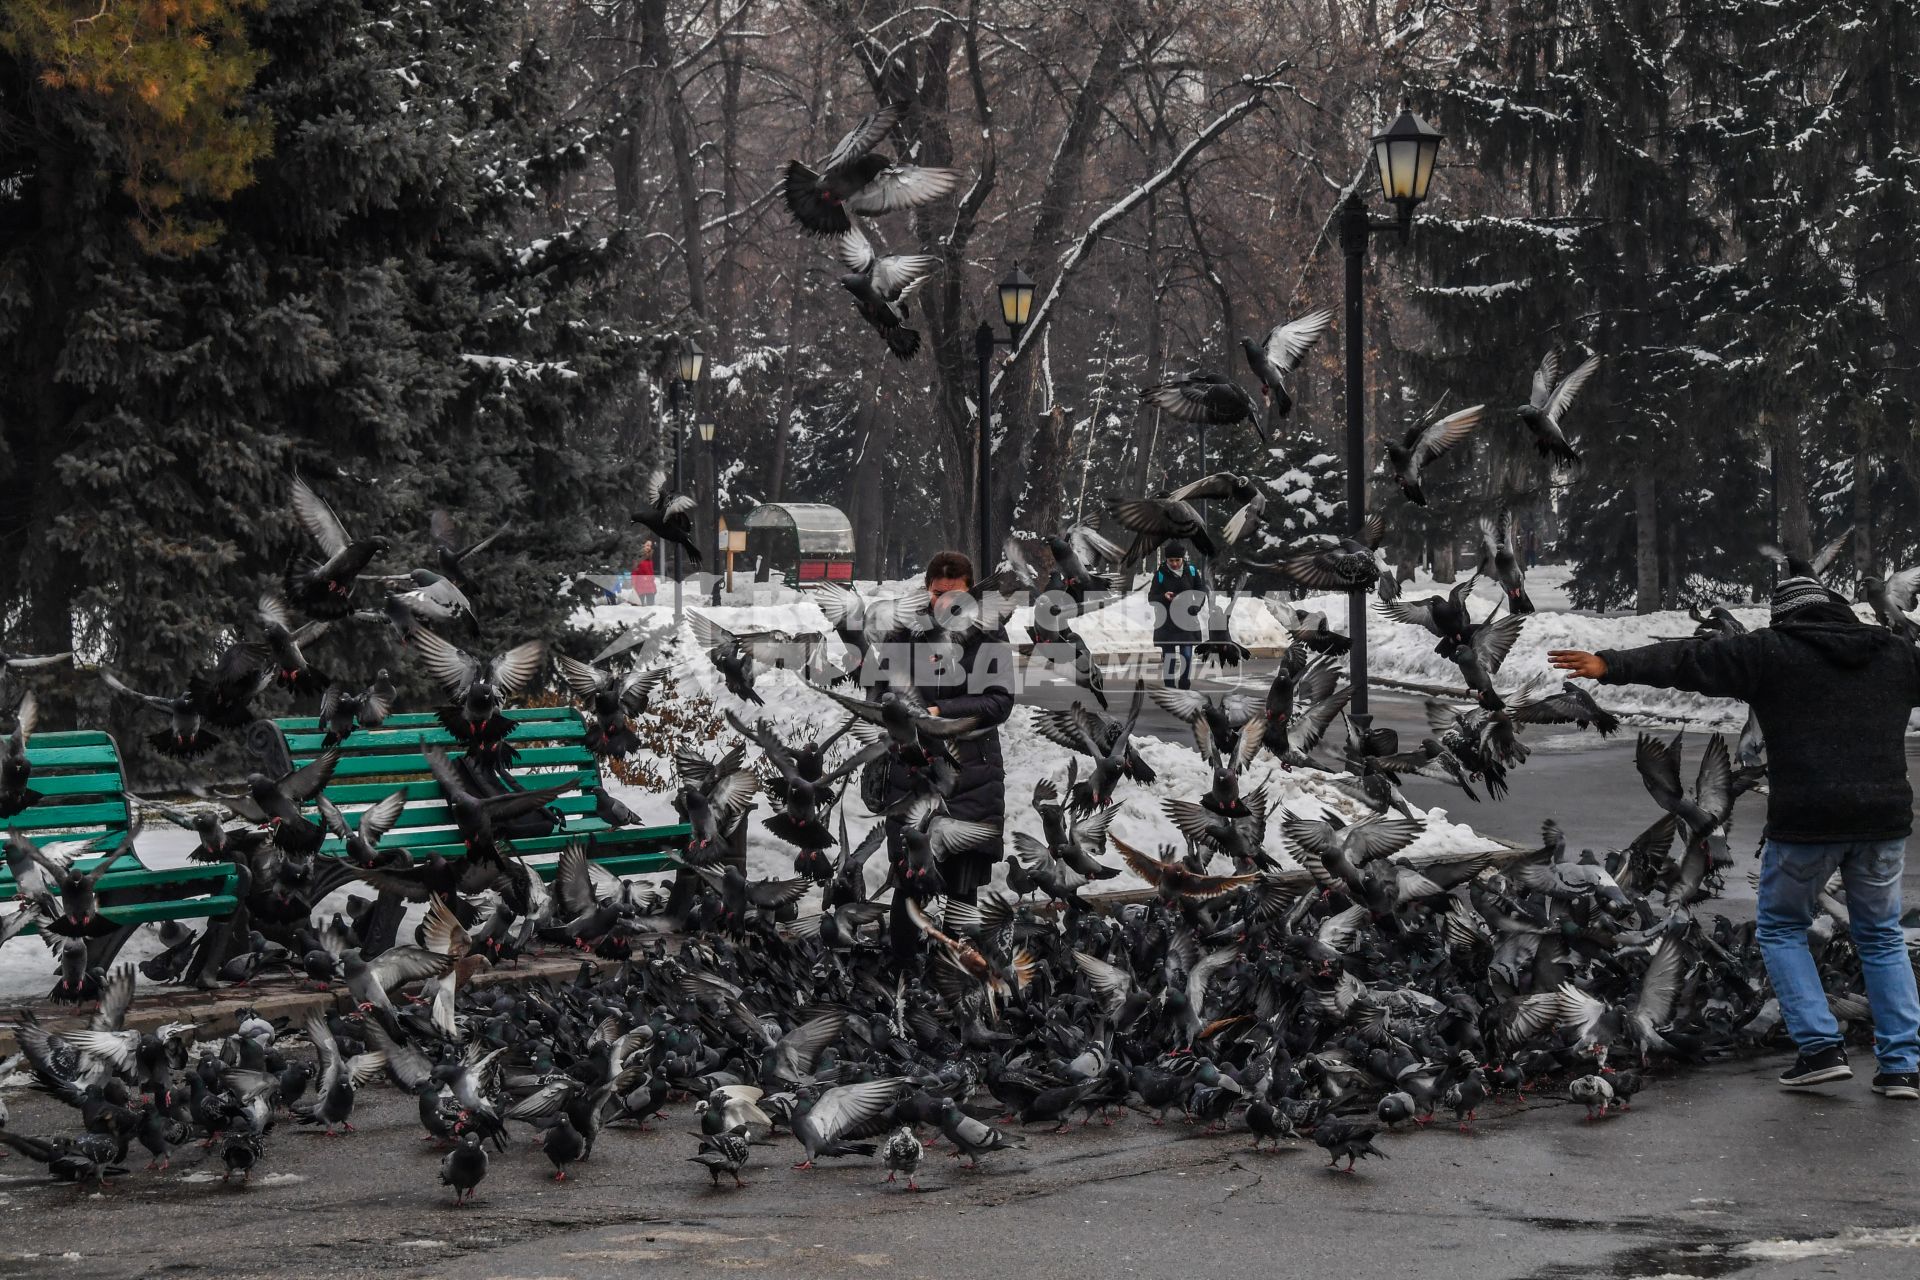 Казахстан, Алма-Ата. Стая  голубей   в парке  имени 28 гвардейцев-панфиловцев.